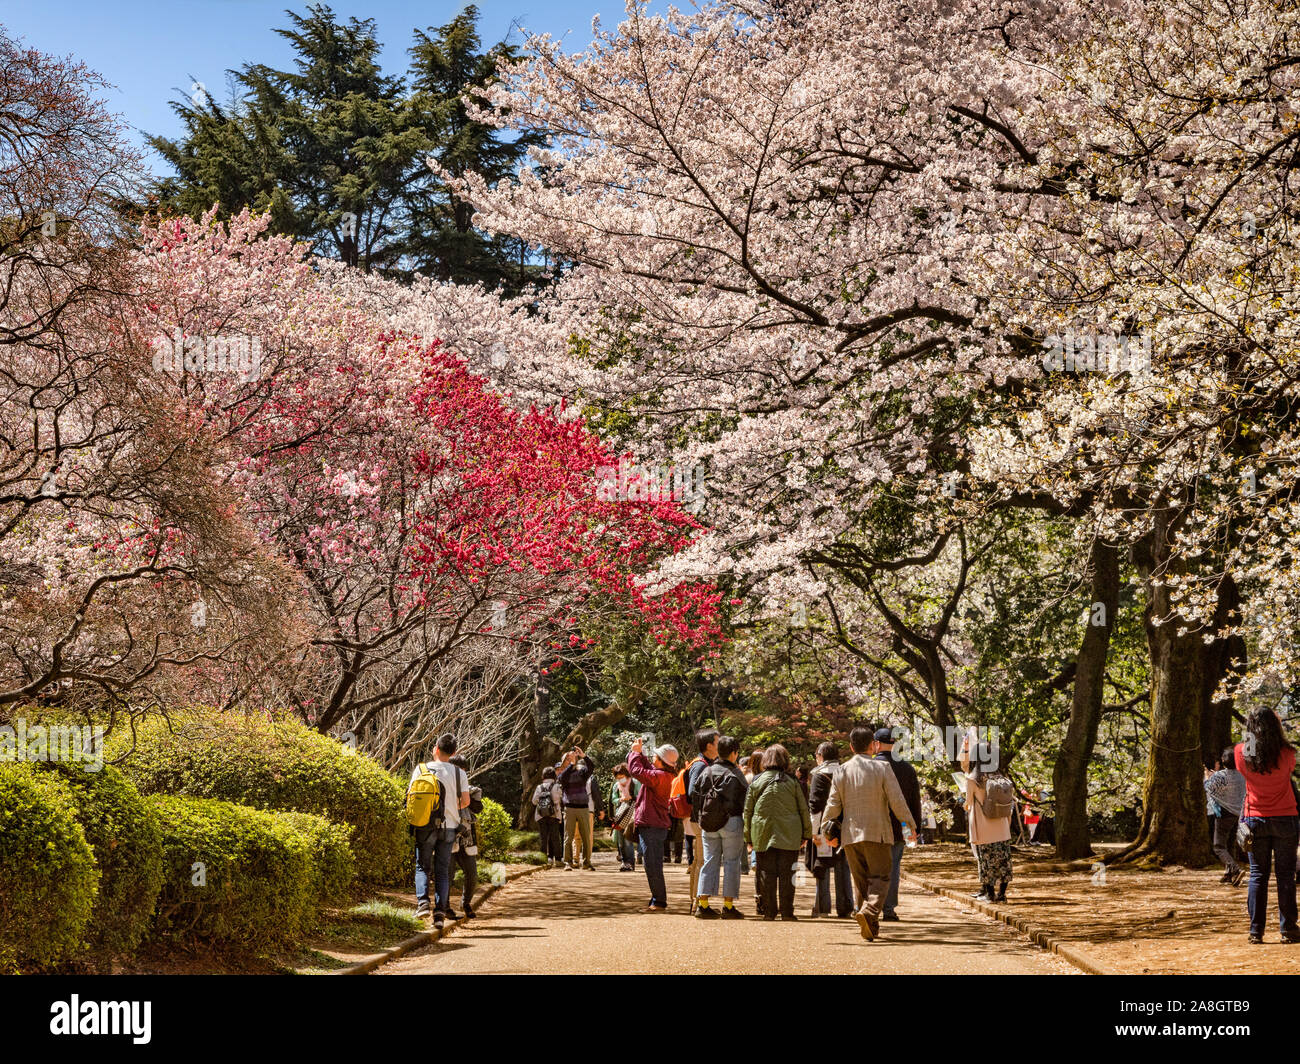 4 avril 2019 : Tokyo, Japon - Les visiteurs admirer les cerisiers en fleurs massés au Jardin National de Shinjuku Gyoen, Tokyo, dans la saison des cerisiers en fleur. Banque D'Images